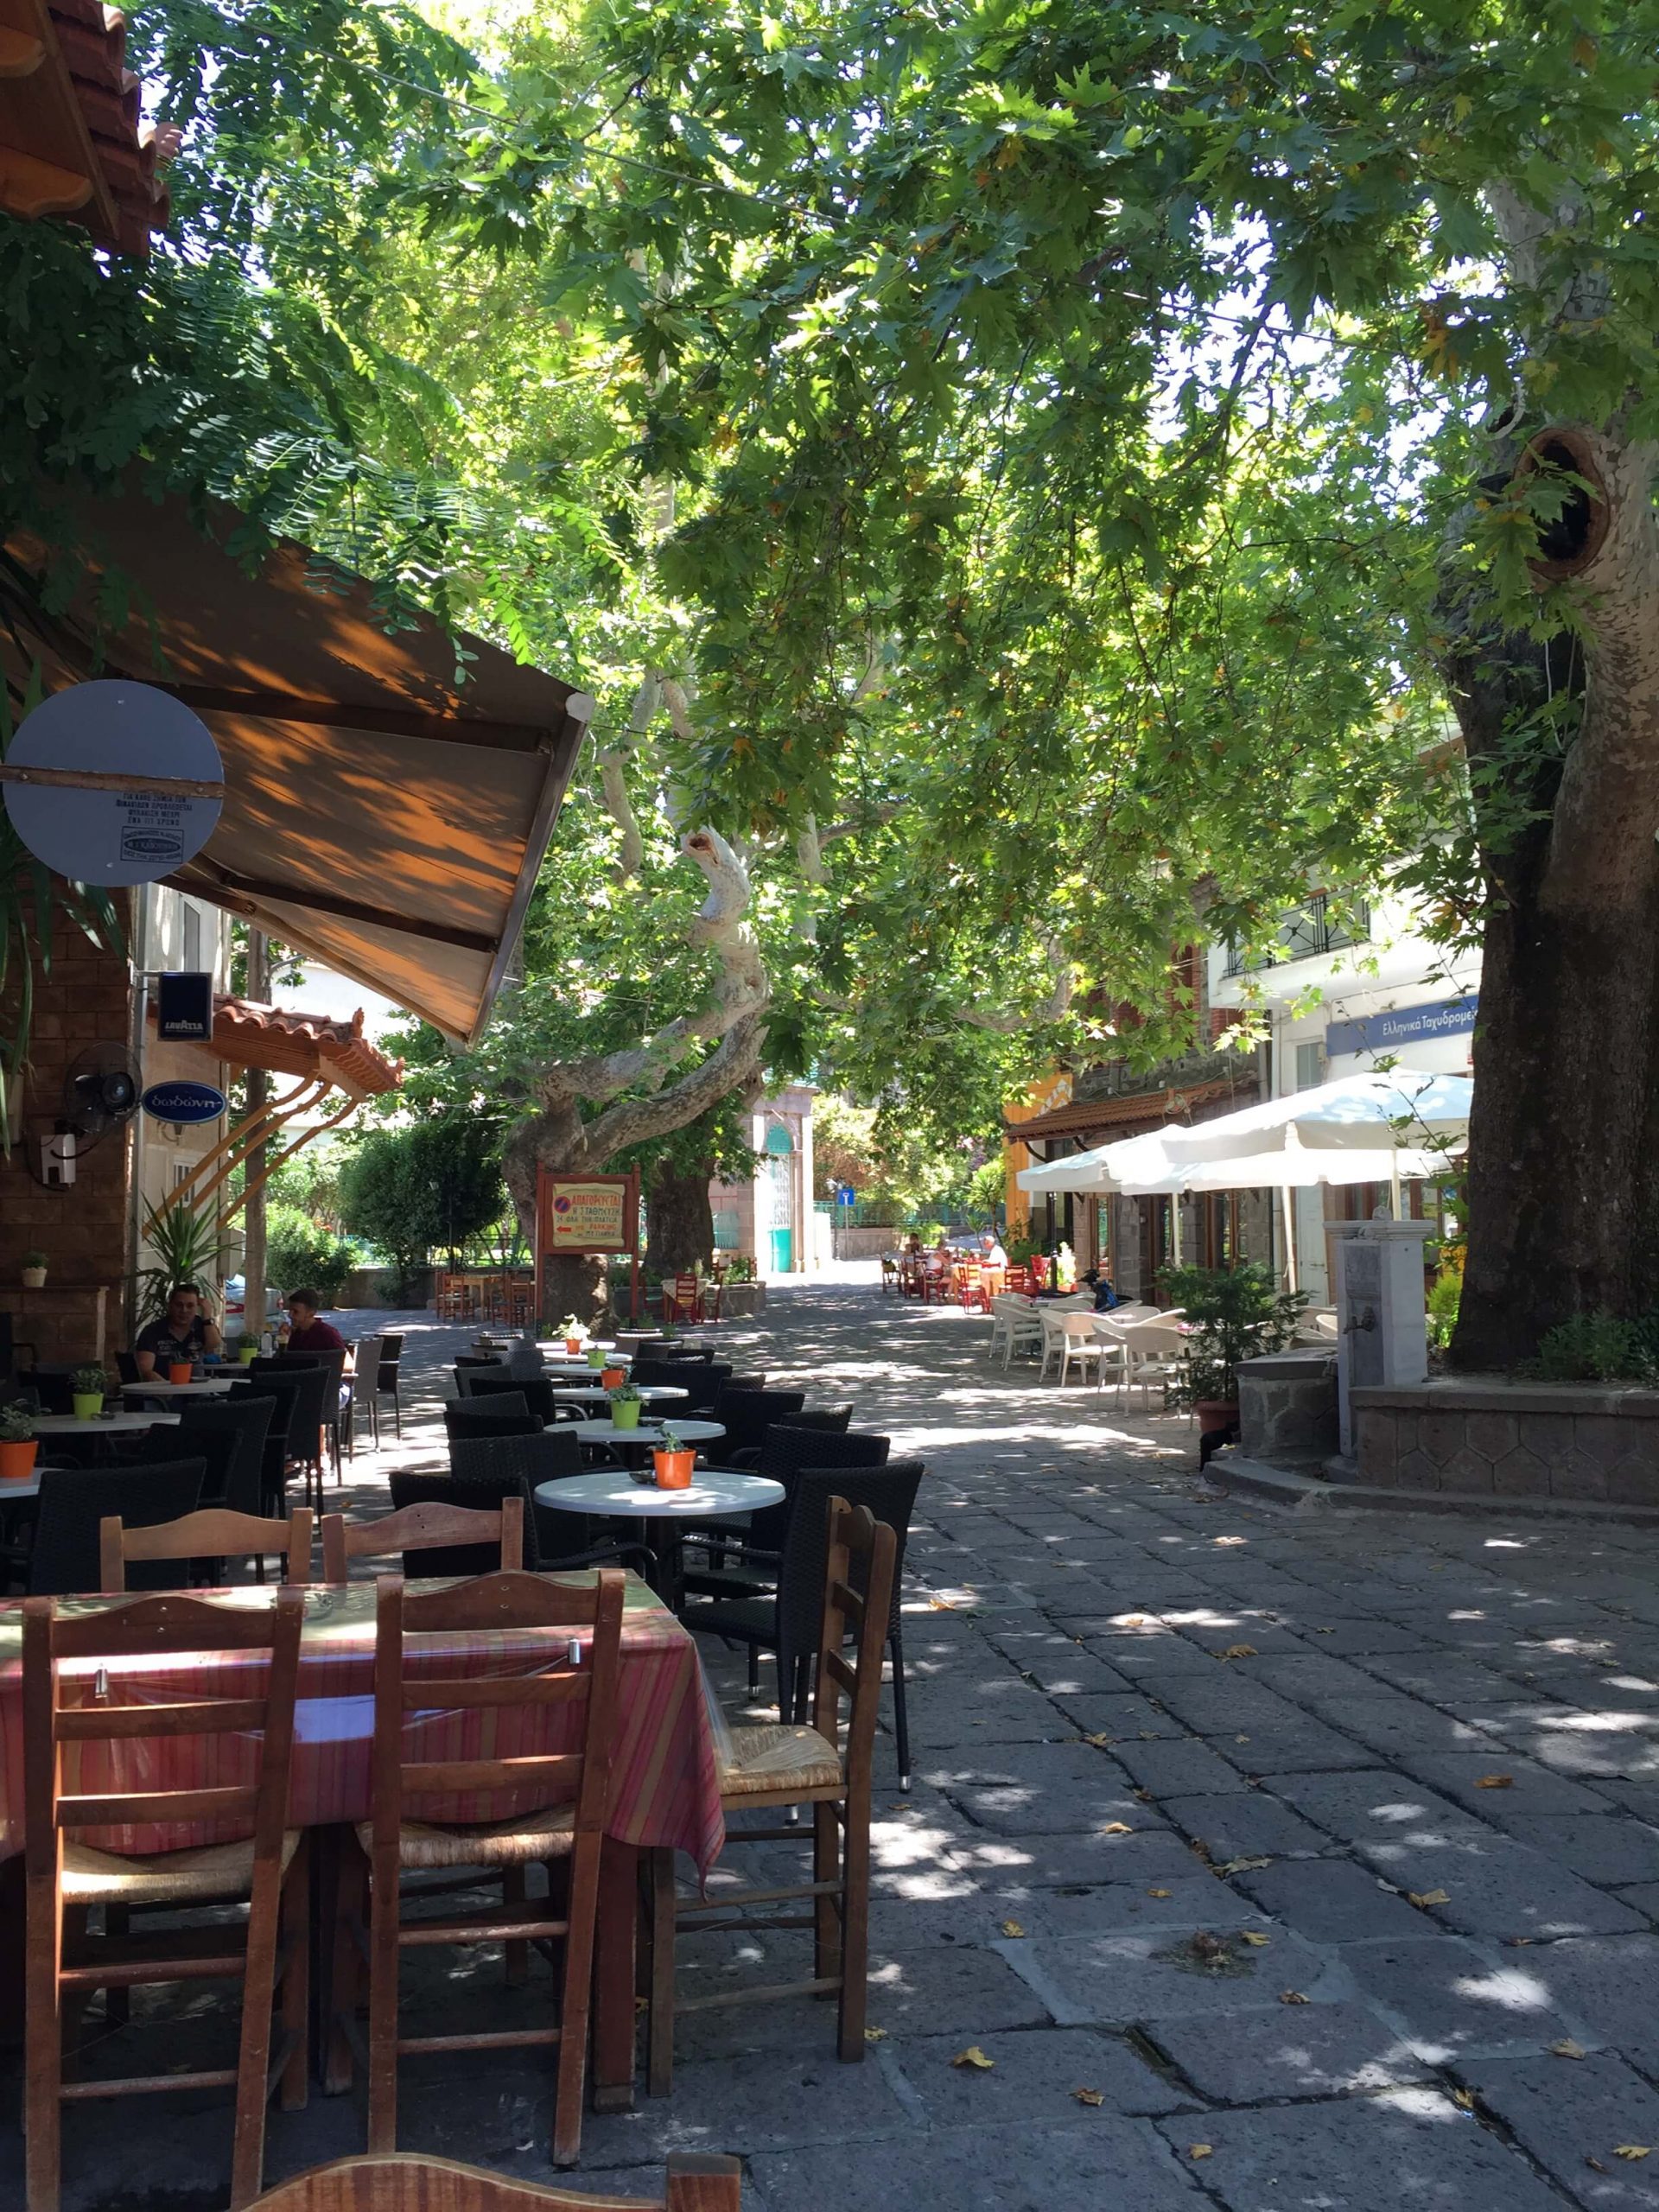 Macidenin-Hakan Yaman - galeri - Huş Ağaçlarının Sessizliği - Macidenin Nikosla Antissada oturduğu kahve